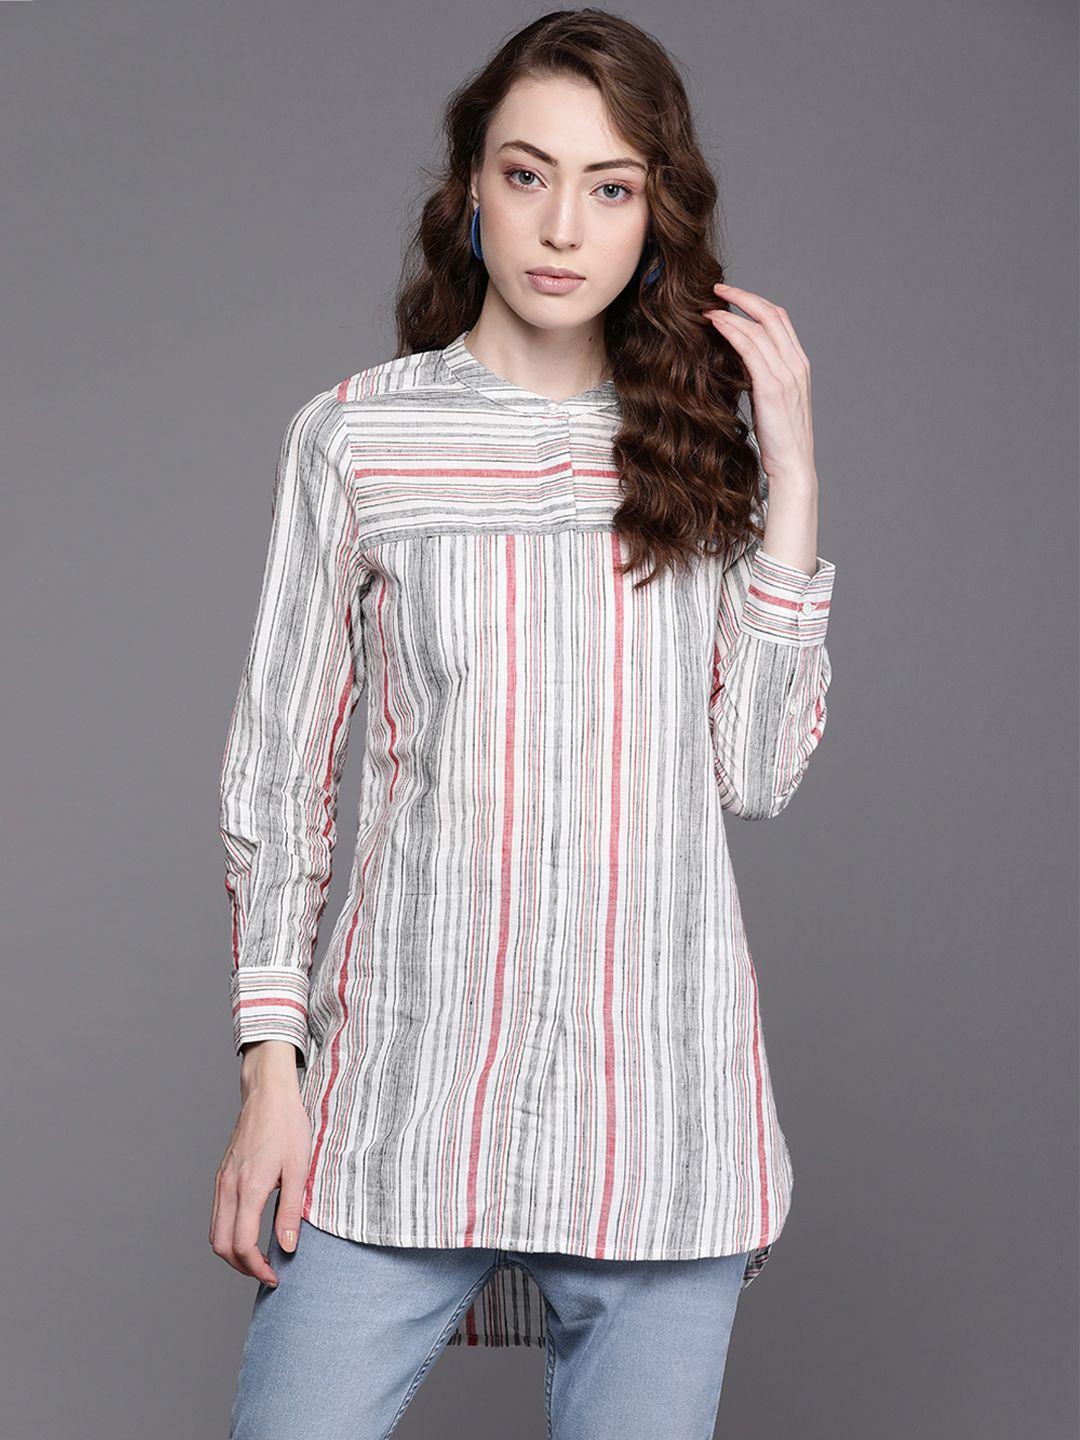 fabindia-white-&-red-mandarin-collar-striped-pure-cotton-tunic